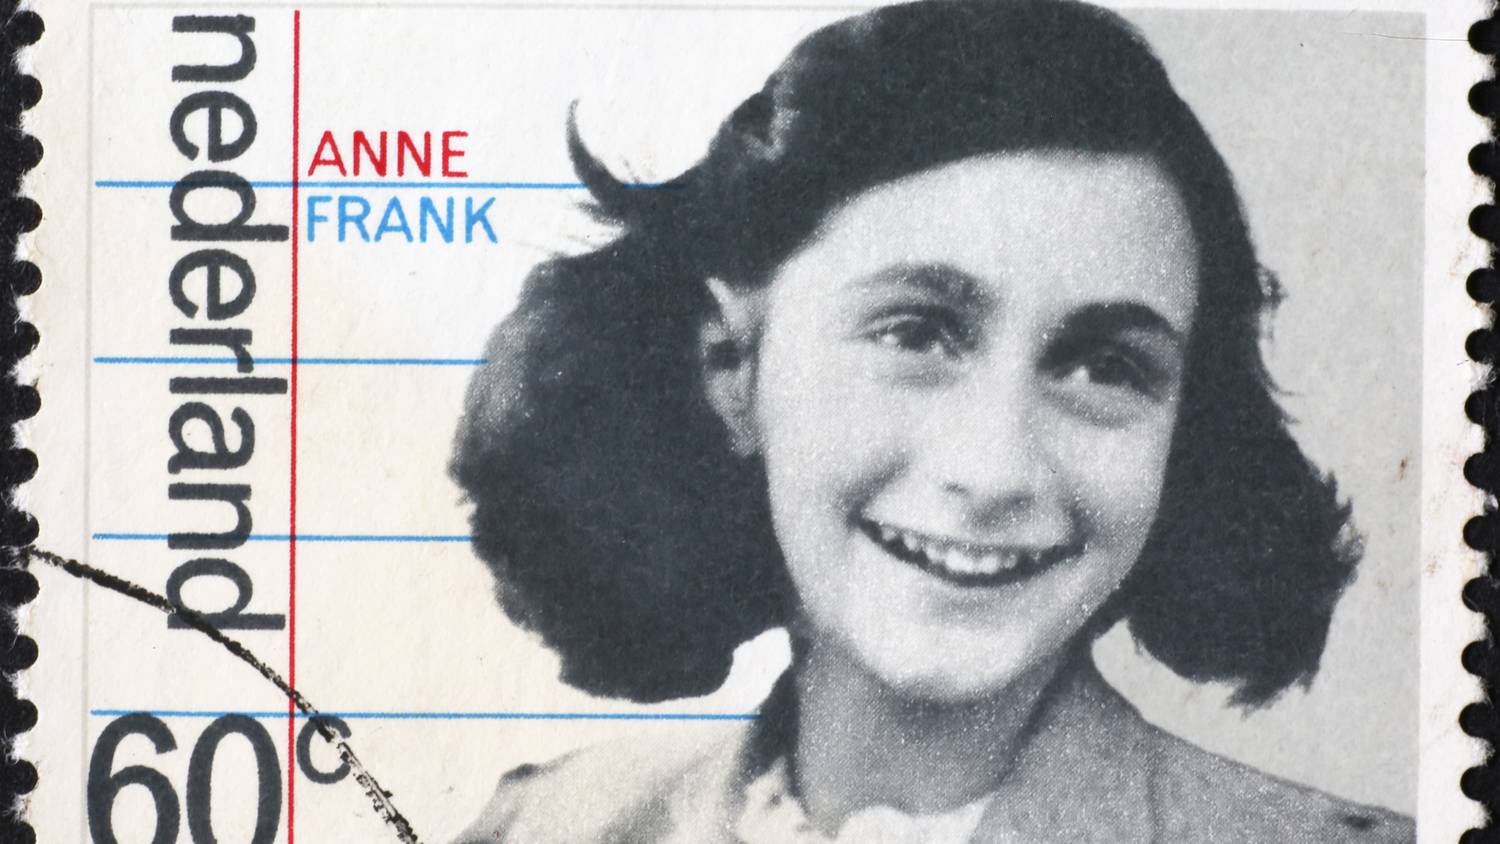 Kiderült, ki árulhatta el a náciknak Anne Frank és családja hollétét